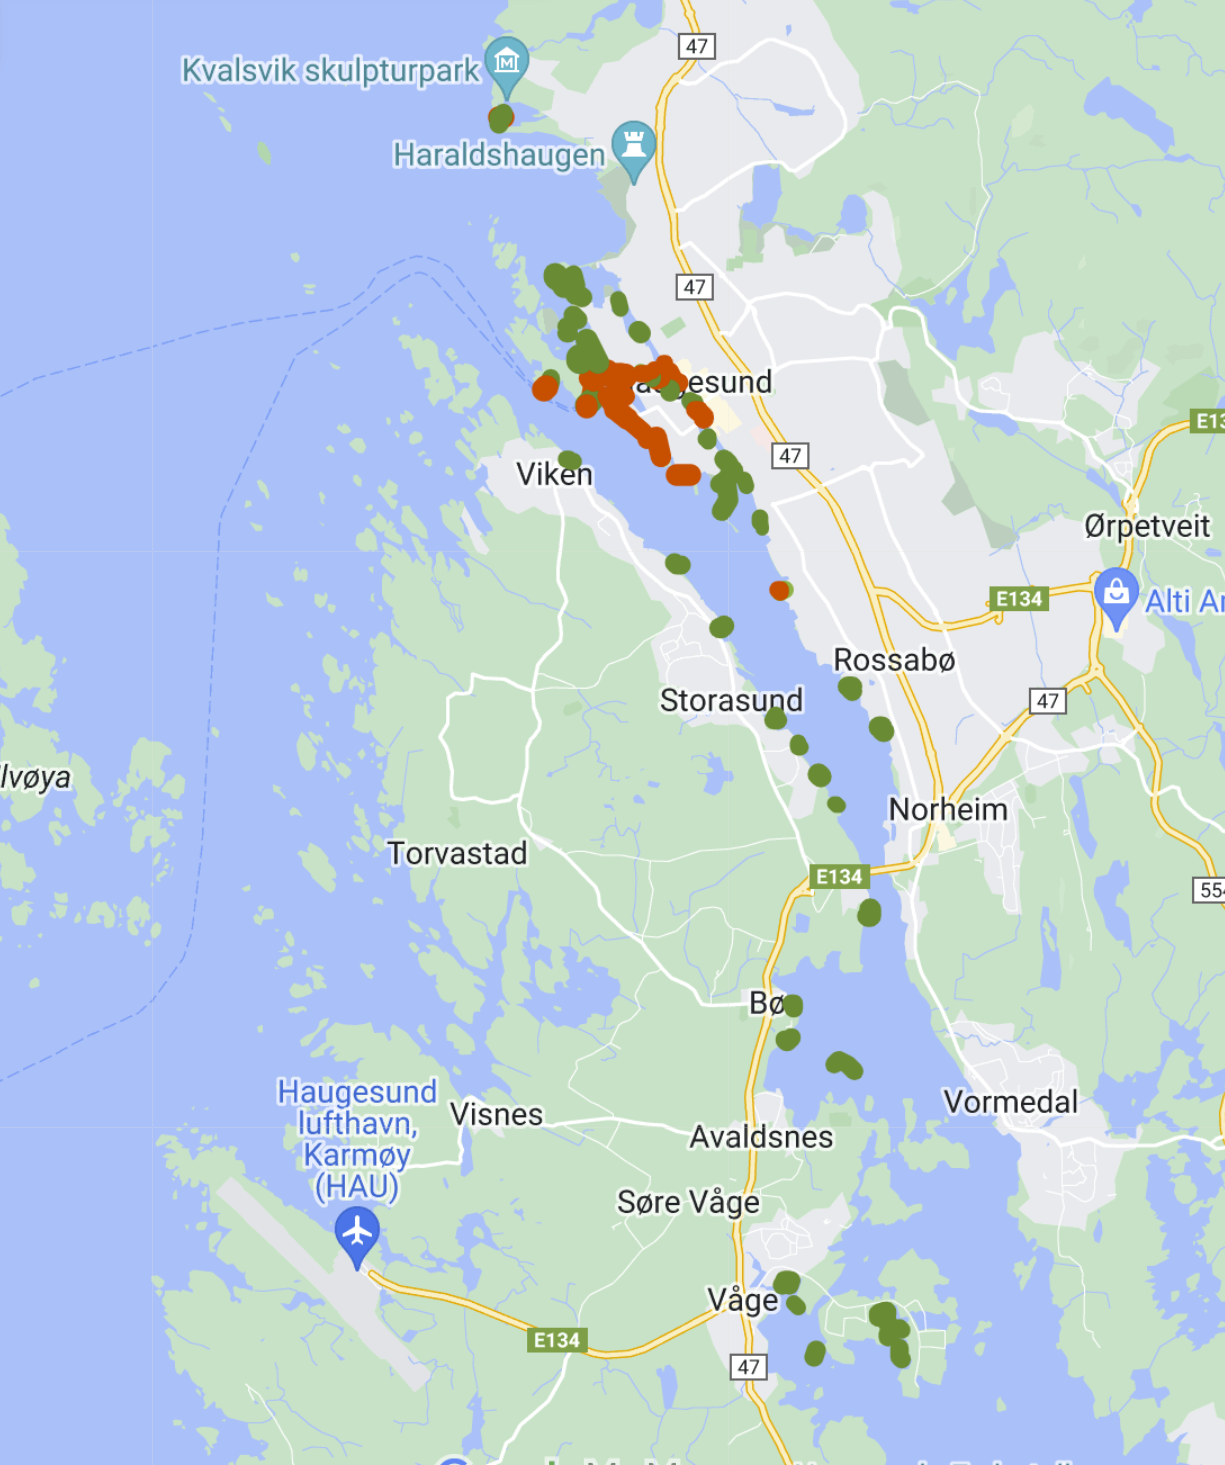 Dette er et oversiktskart som viser videotransekter som er undersøkt for havnespy i Haugesund og Kamrøy kommune